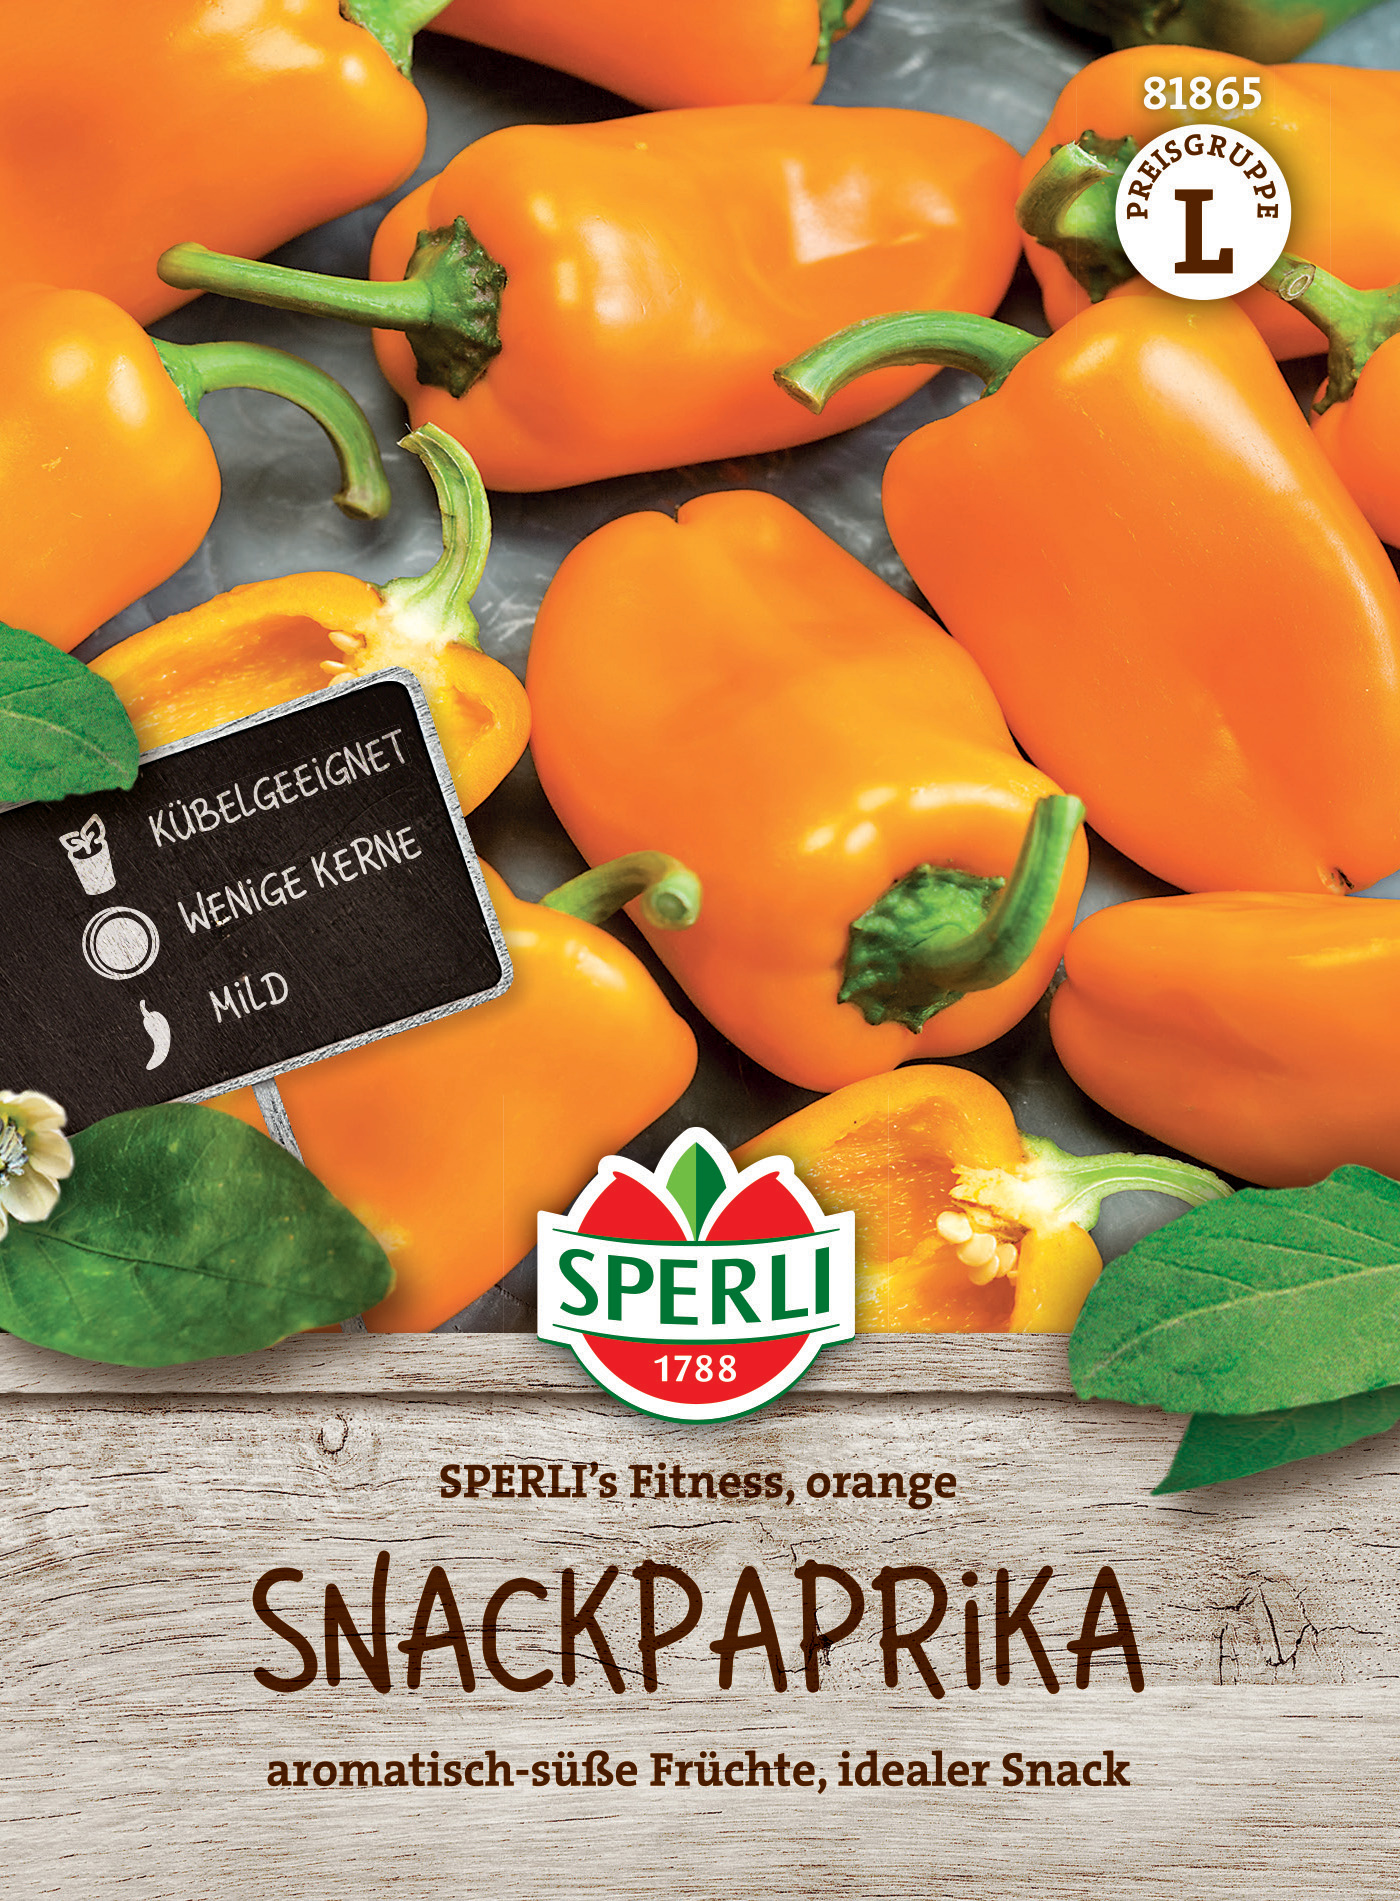 Snackpaprika SPERLI's Fitness, orange, F1